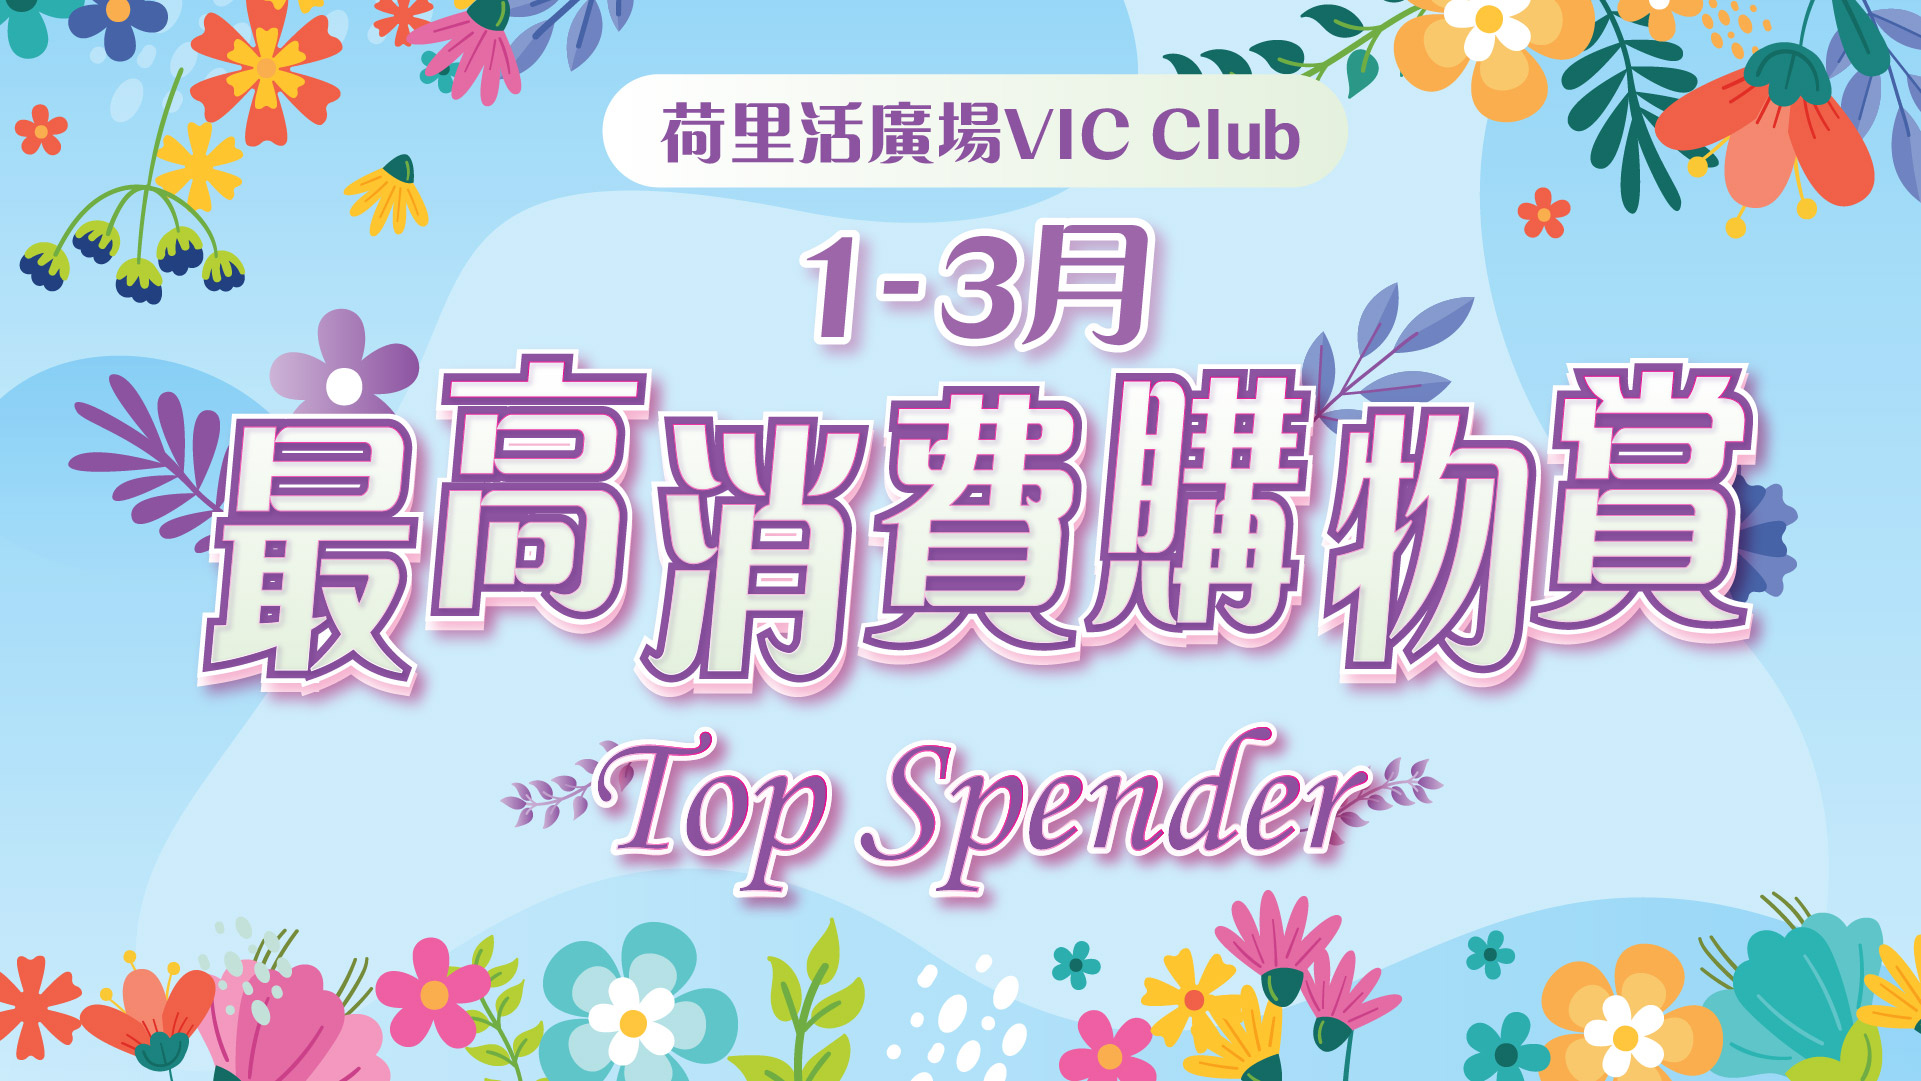 VIC Highest Spending Program (Jan - Mar)